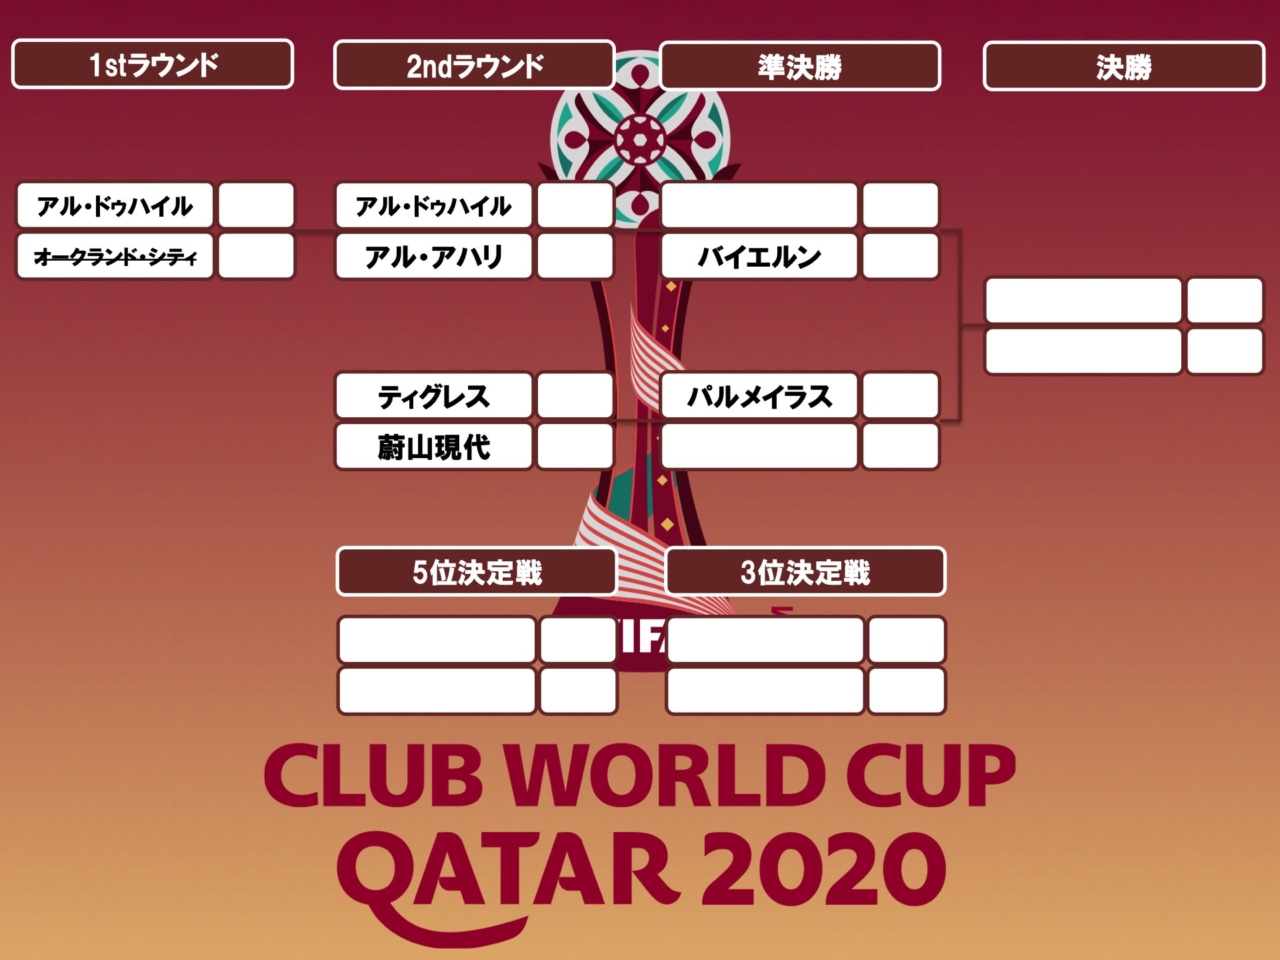 日程 テレビ放送予定 クラブワールドカップ フットボールチャンネル